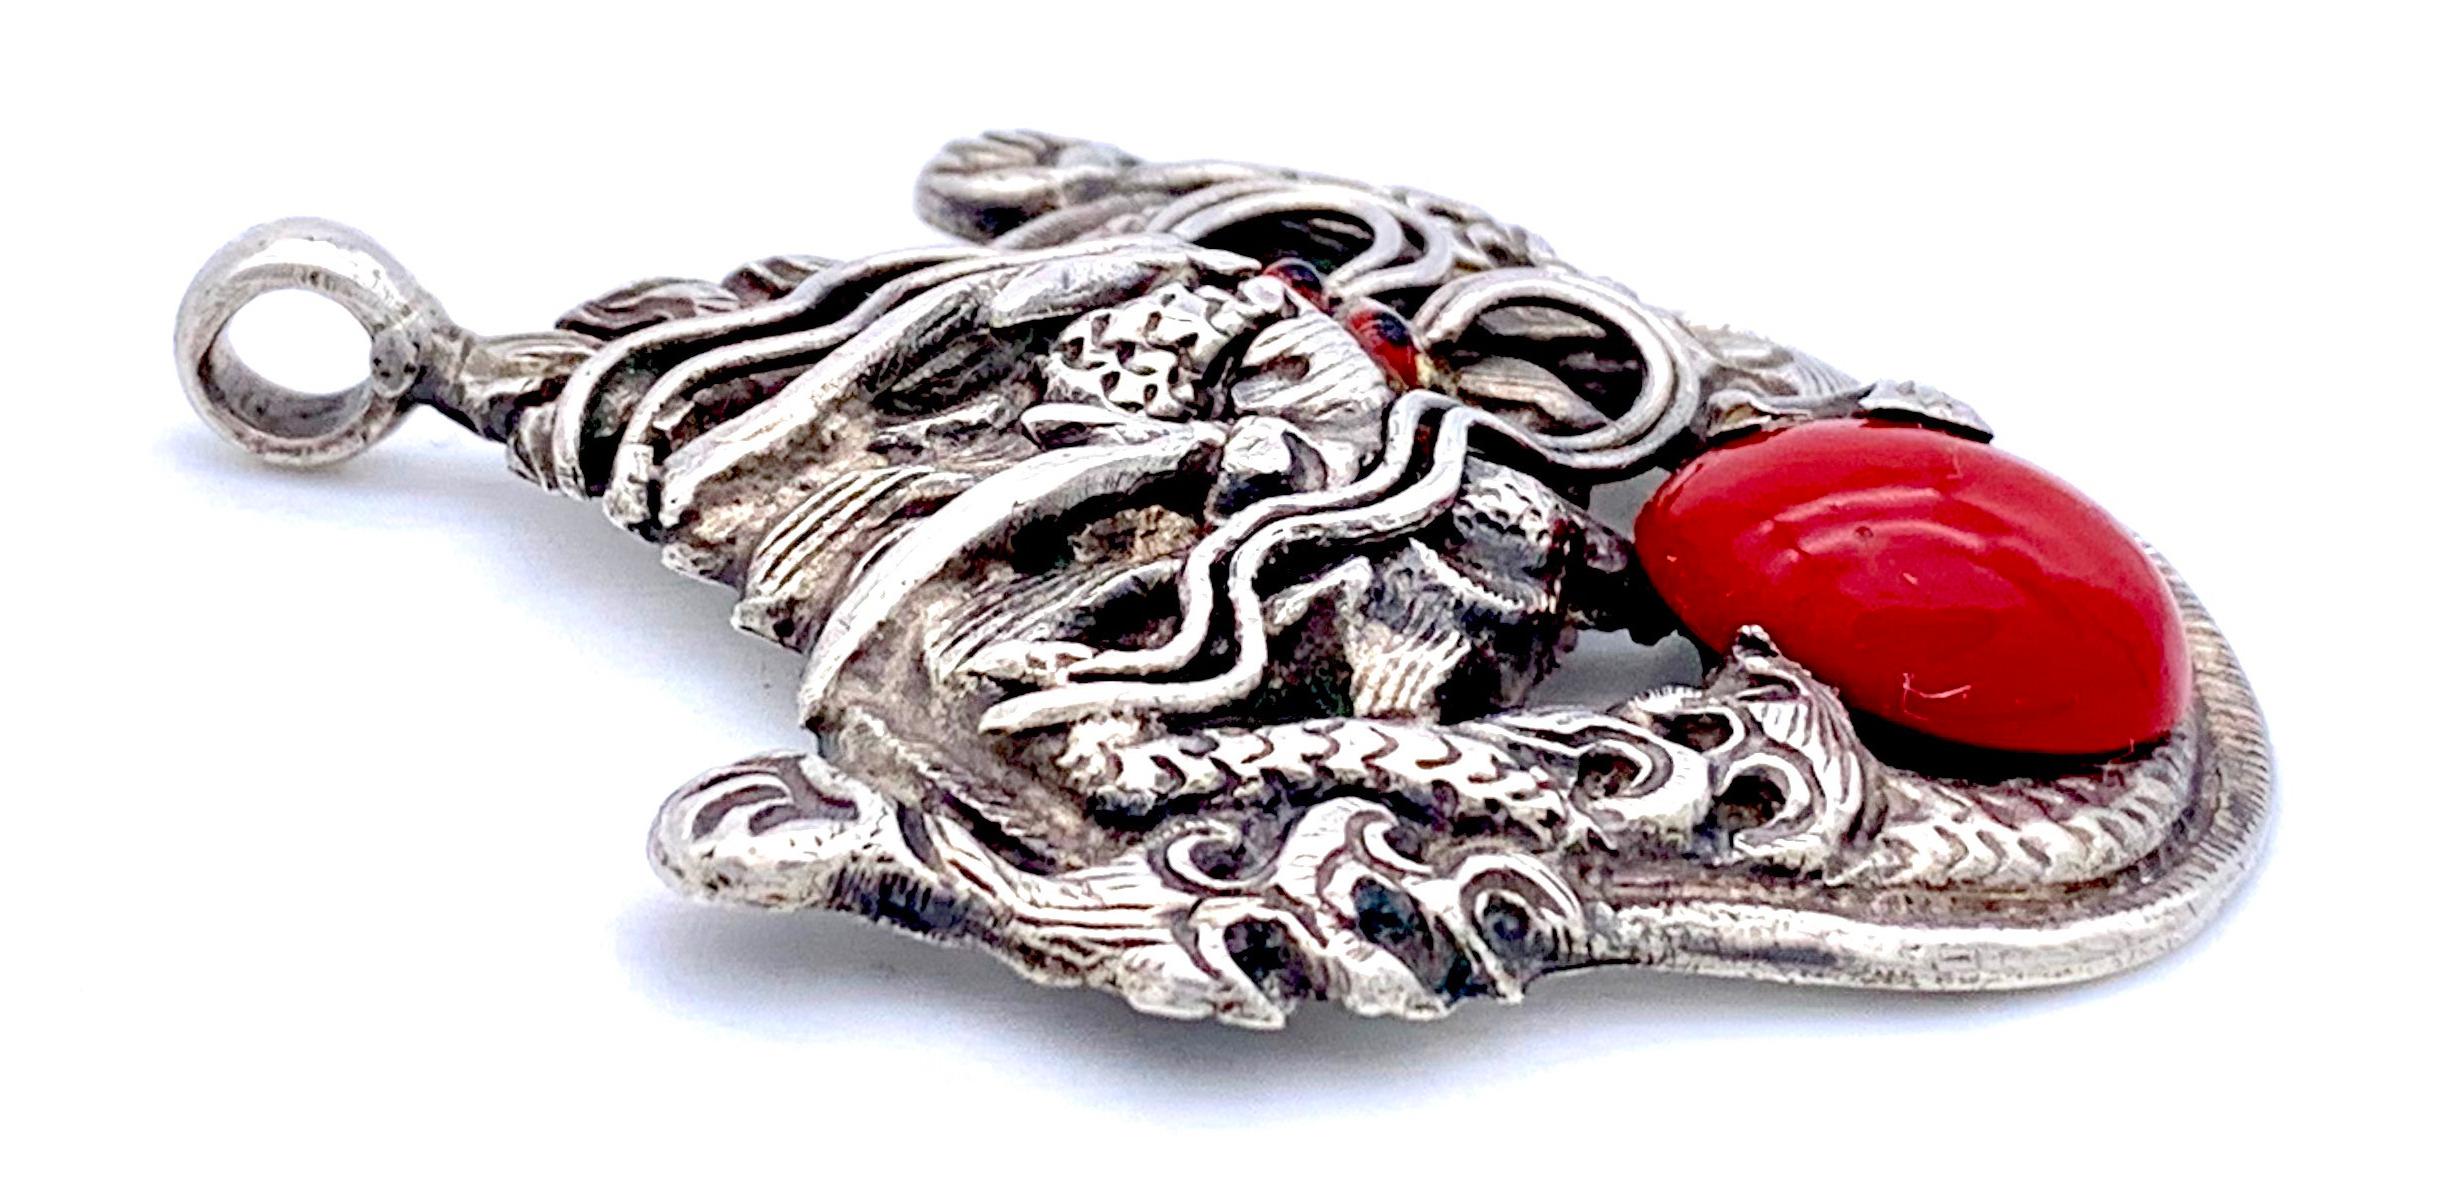 Ce pendentif chinois expressif en argent représente un dragon tenant dans ses griffes un cabochon en verre rouge. Les yeux des dragons sont faits de verre rouge et noir.